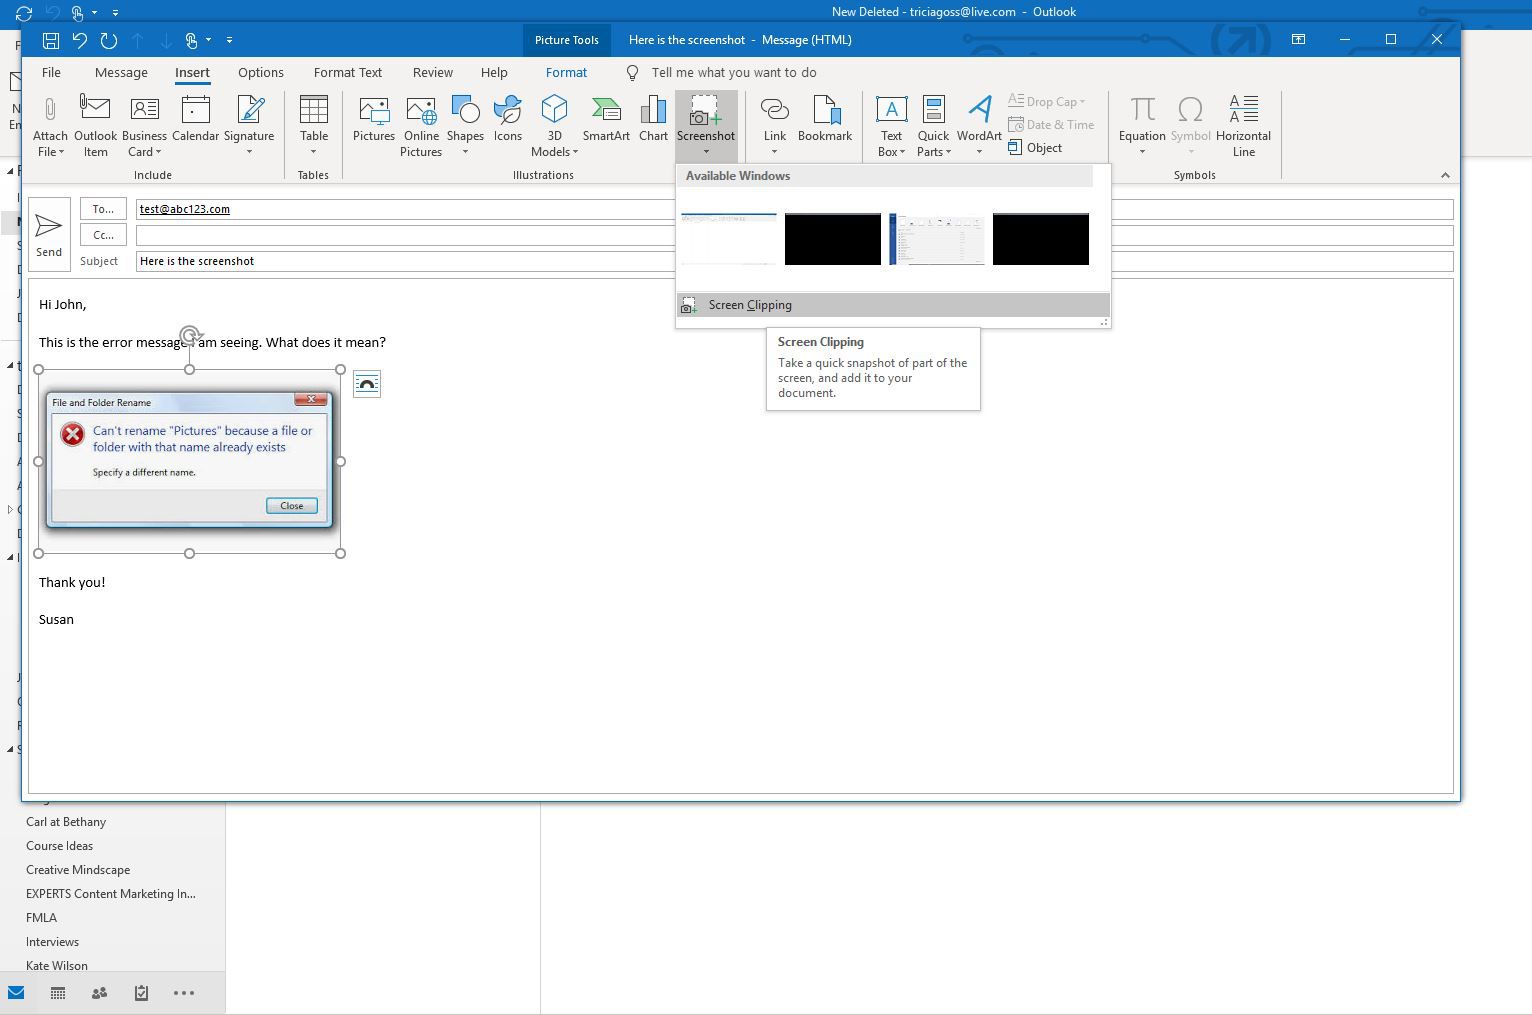 Screenshot z galerie Clipping screen v aplikaci Outlook, který ukazuje, jak poslat snímek obrazovky e-mailem